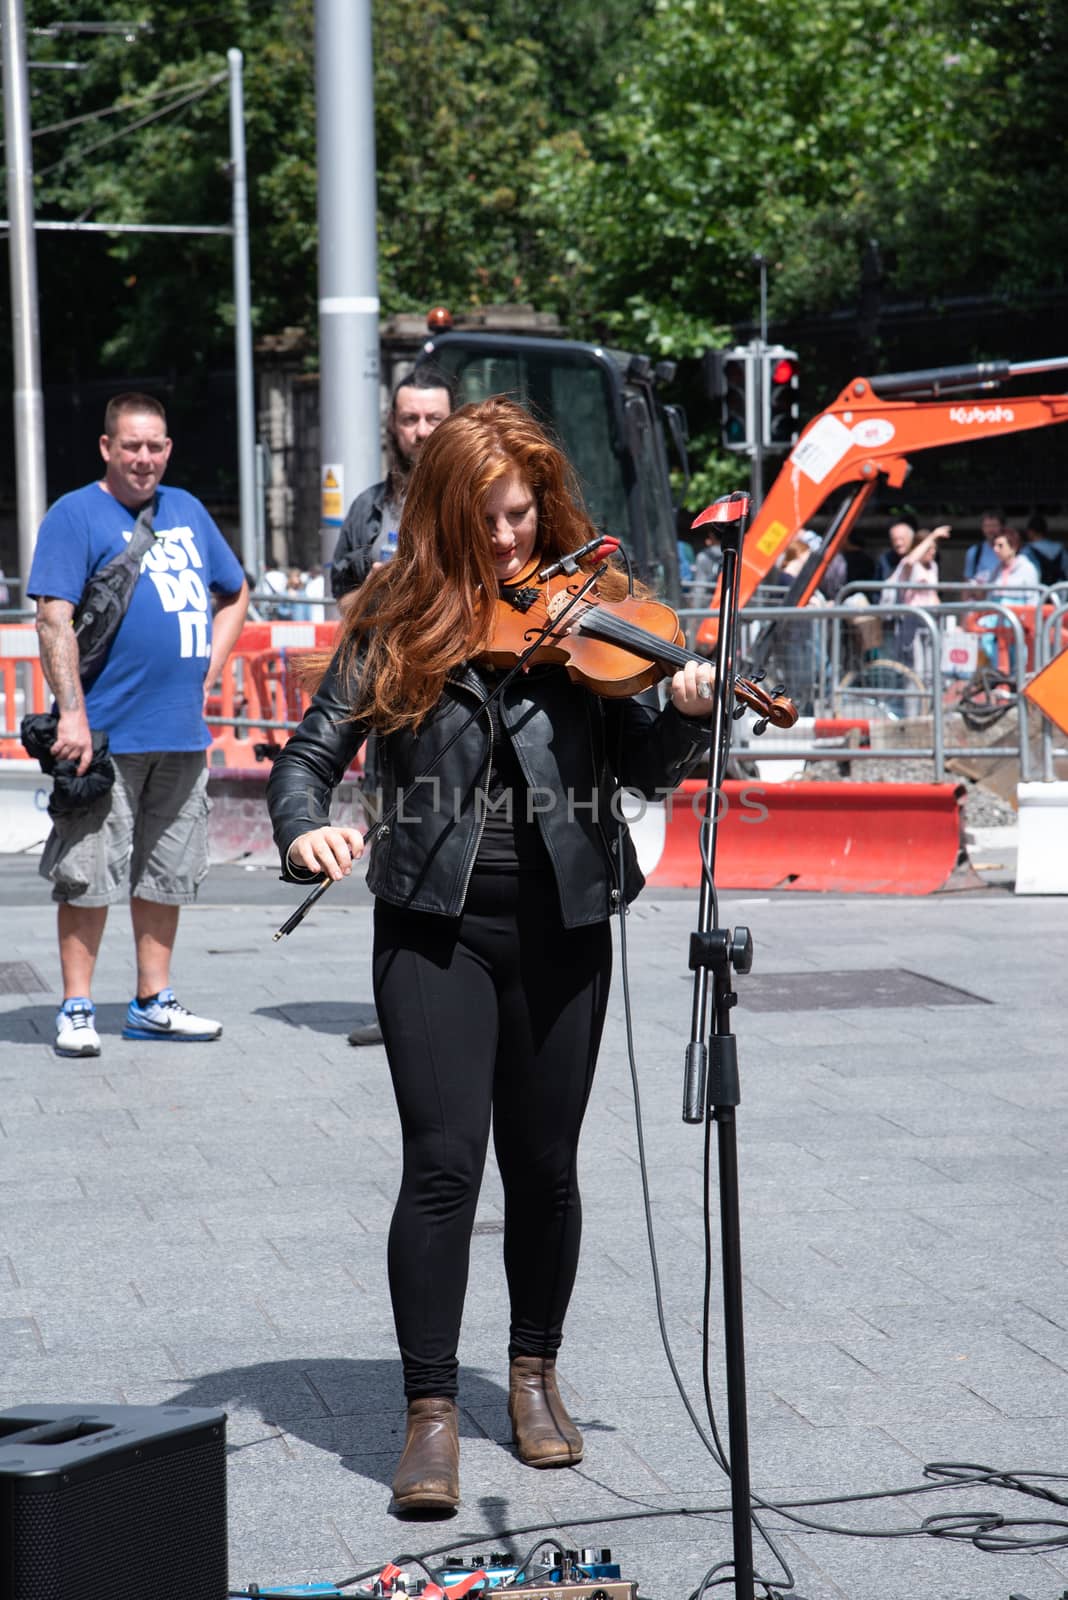 Dublin Street Musician by jfbenning